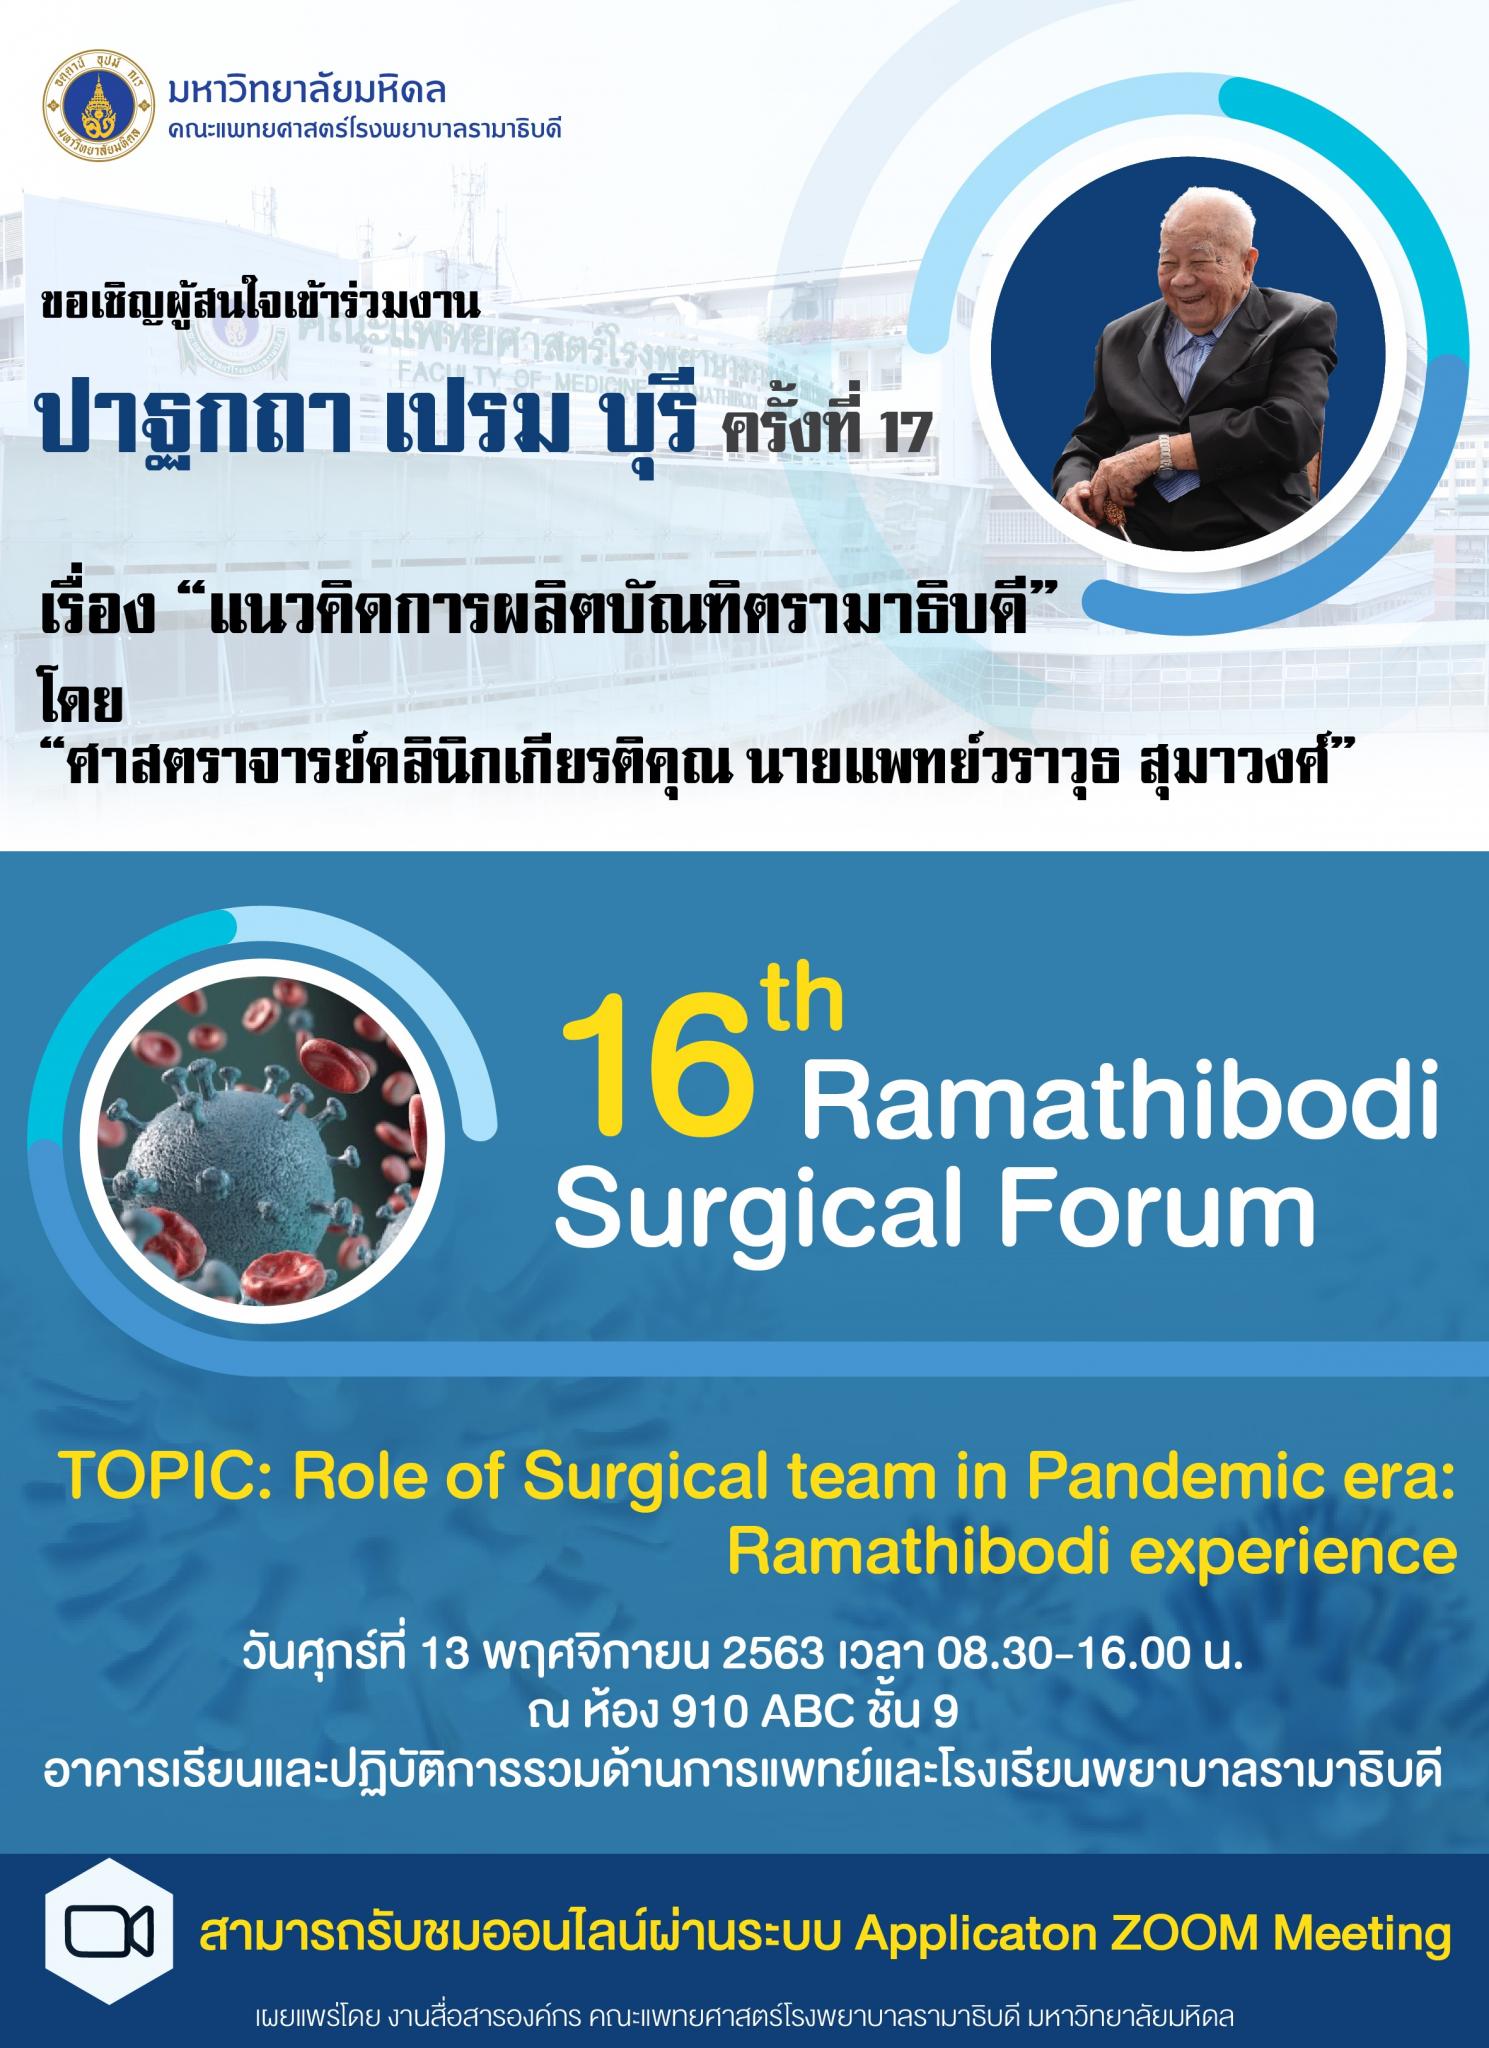 ขอเชิญเข้าร่วมงานปาฐกถา เปรม บุรี ครั้งที่ 17 เรื่อง "แนวคิดการผลิตบัณฑิตรามาธิบดี" และ 16th Ramathibodi Surgical Forum